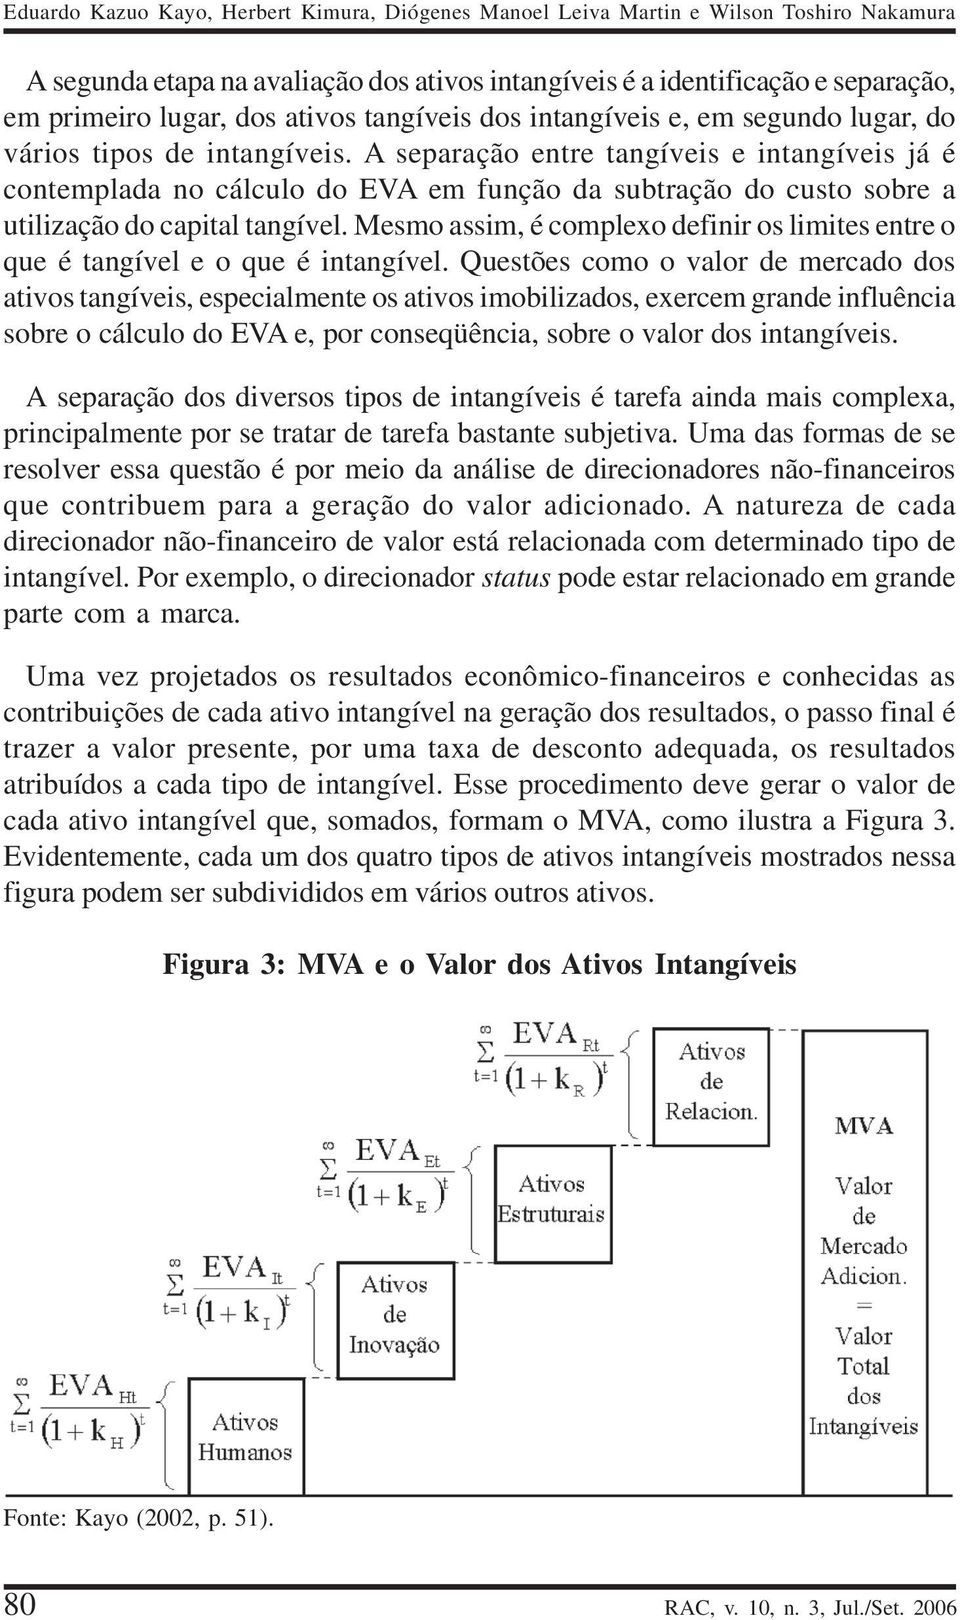 A separação entre tangíveis e intangíveis já é contemplada no cálculo do EVA em função da subtração do custo sobre a utilização do capital tangível.